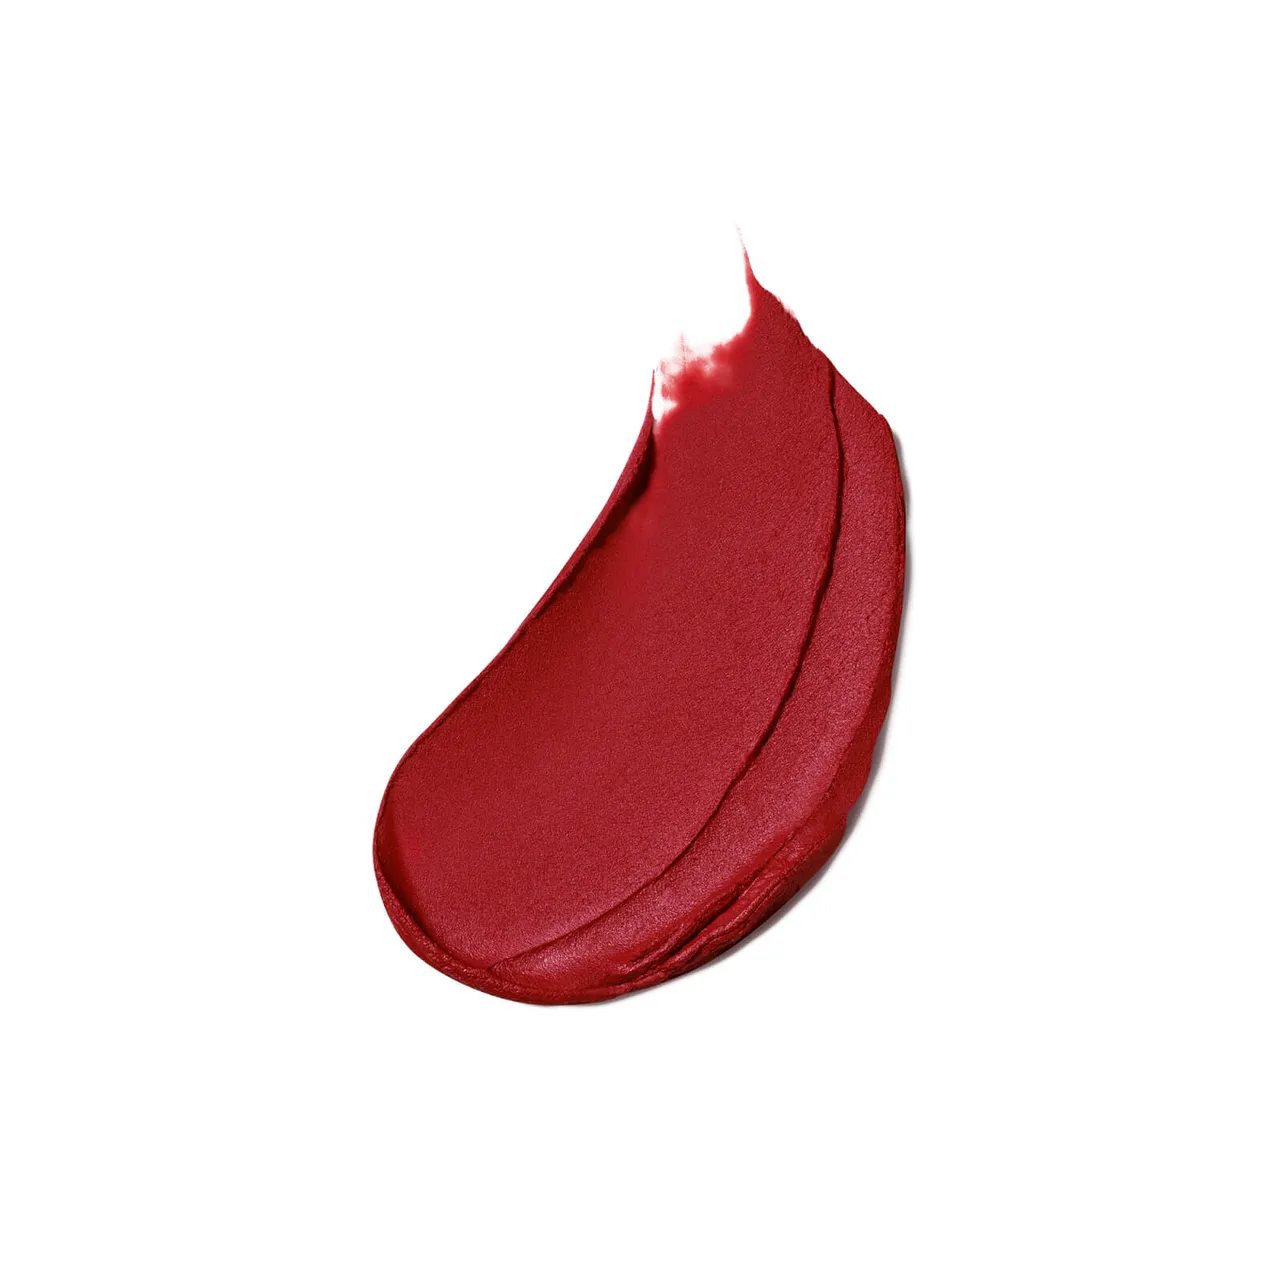 Estée Lauder Pure Colour Matte Lipstick 3.5g (Various Shades) - Lead You on